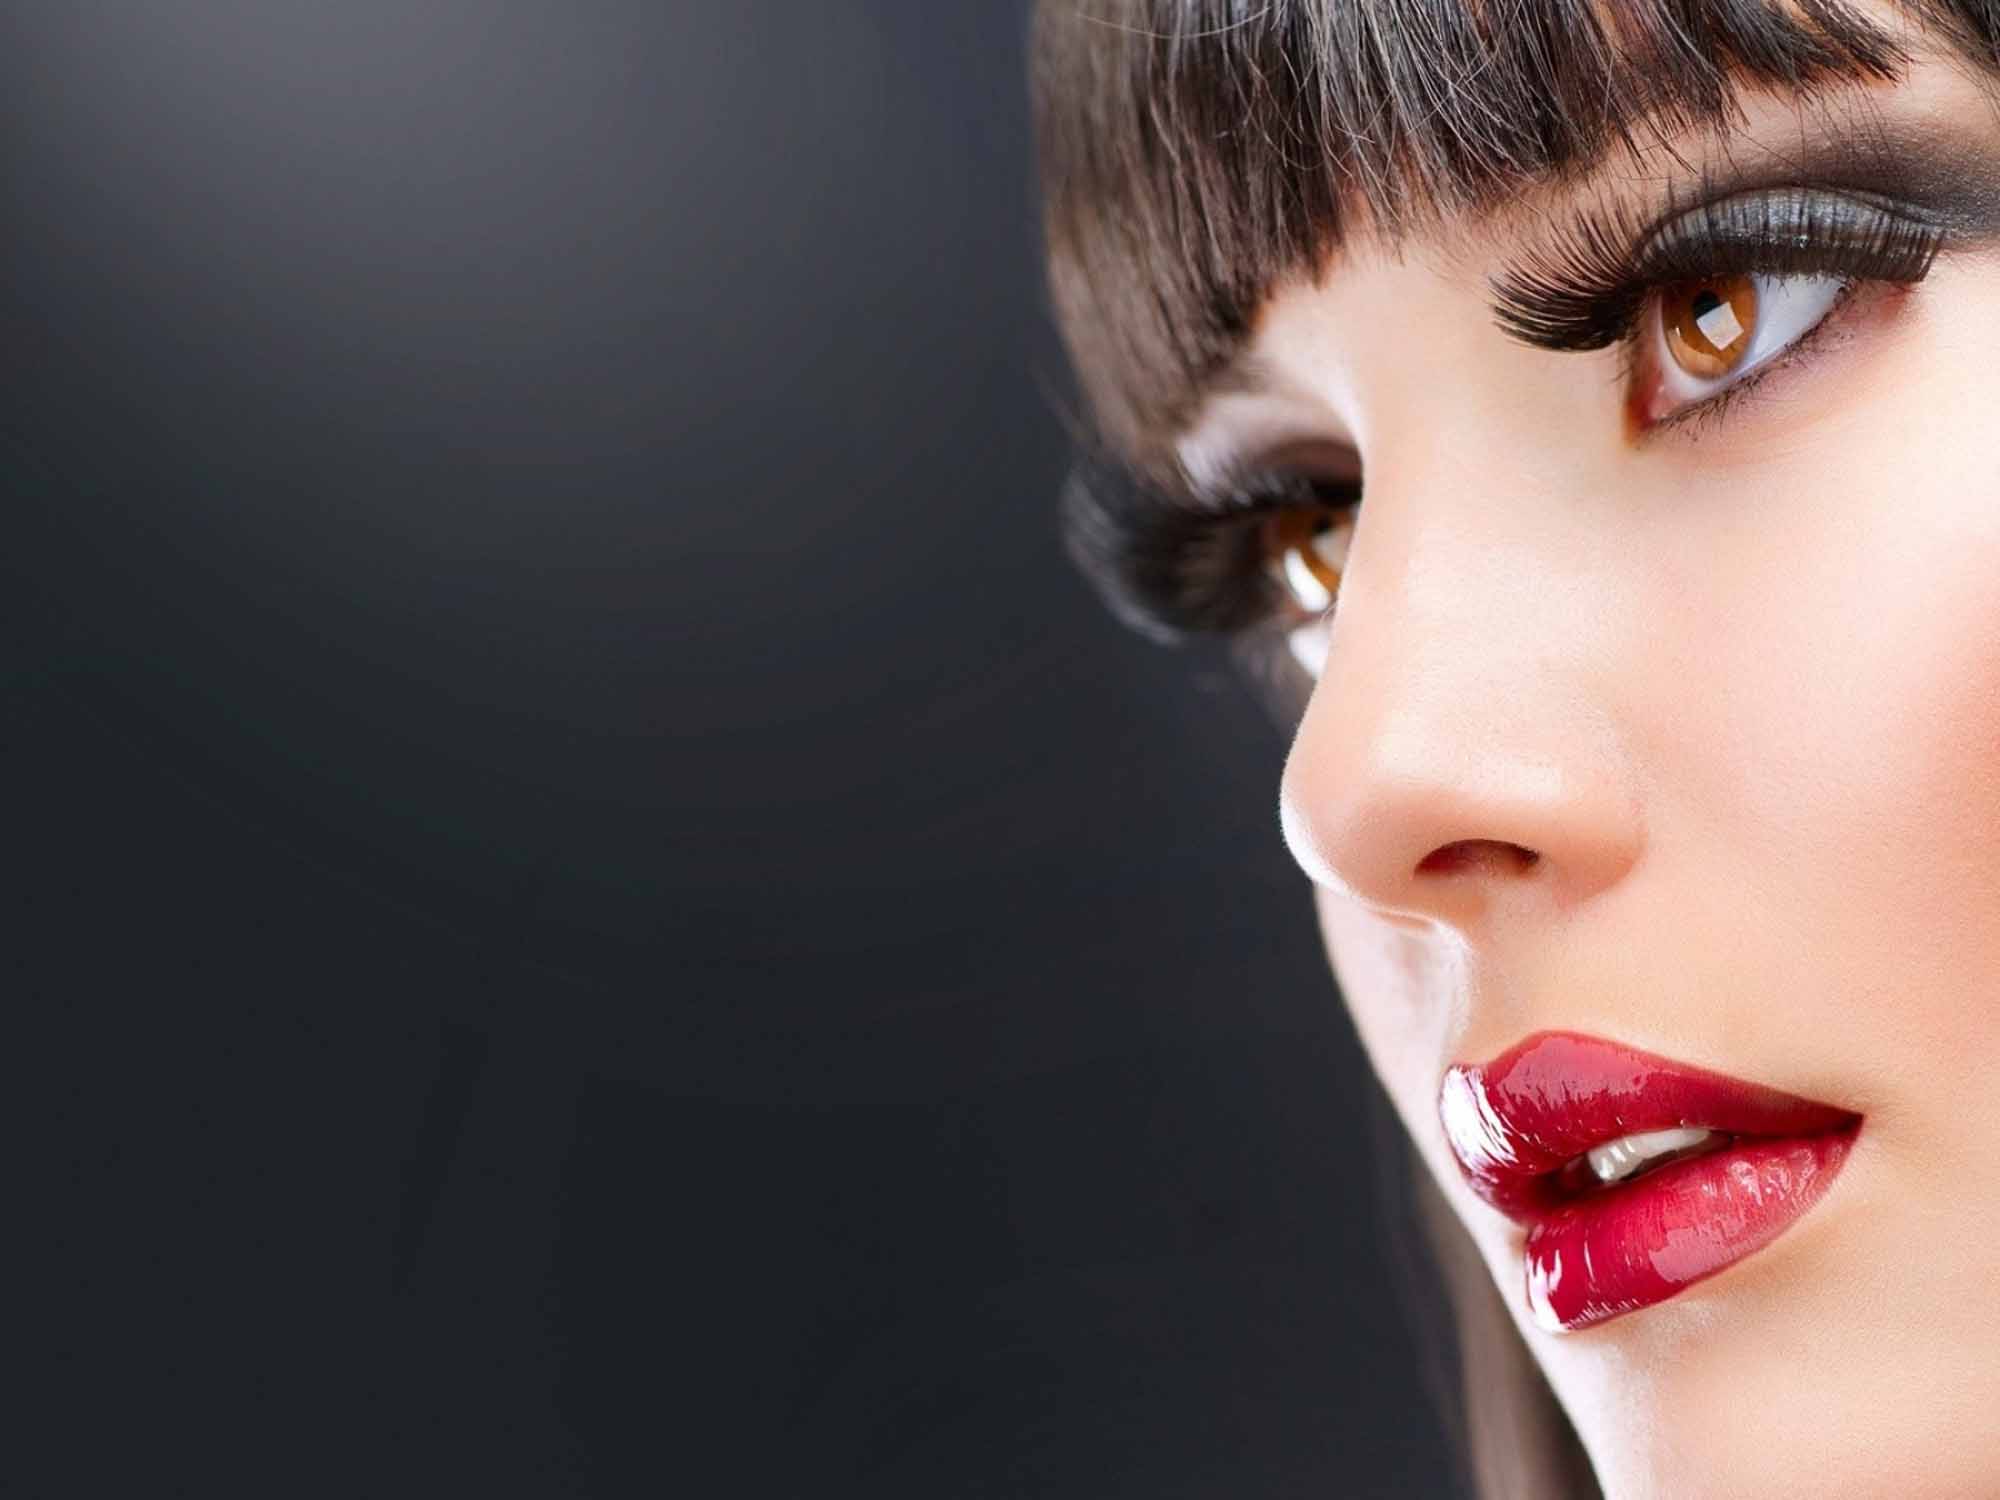 http://web-rockstars.com/bellezza/wp-content/uploads/2013/09/makeup003.jpg